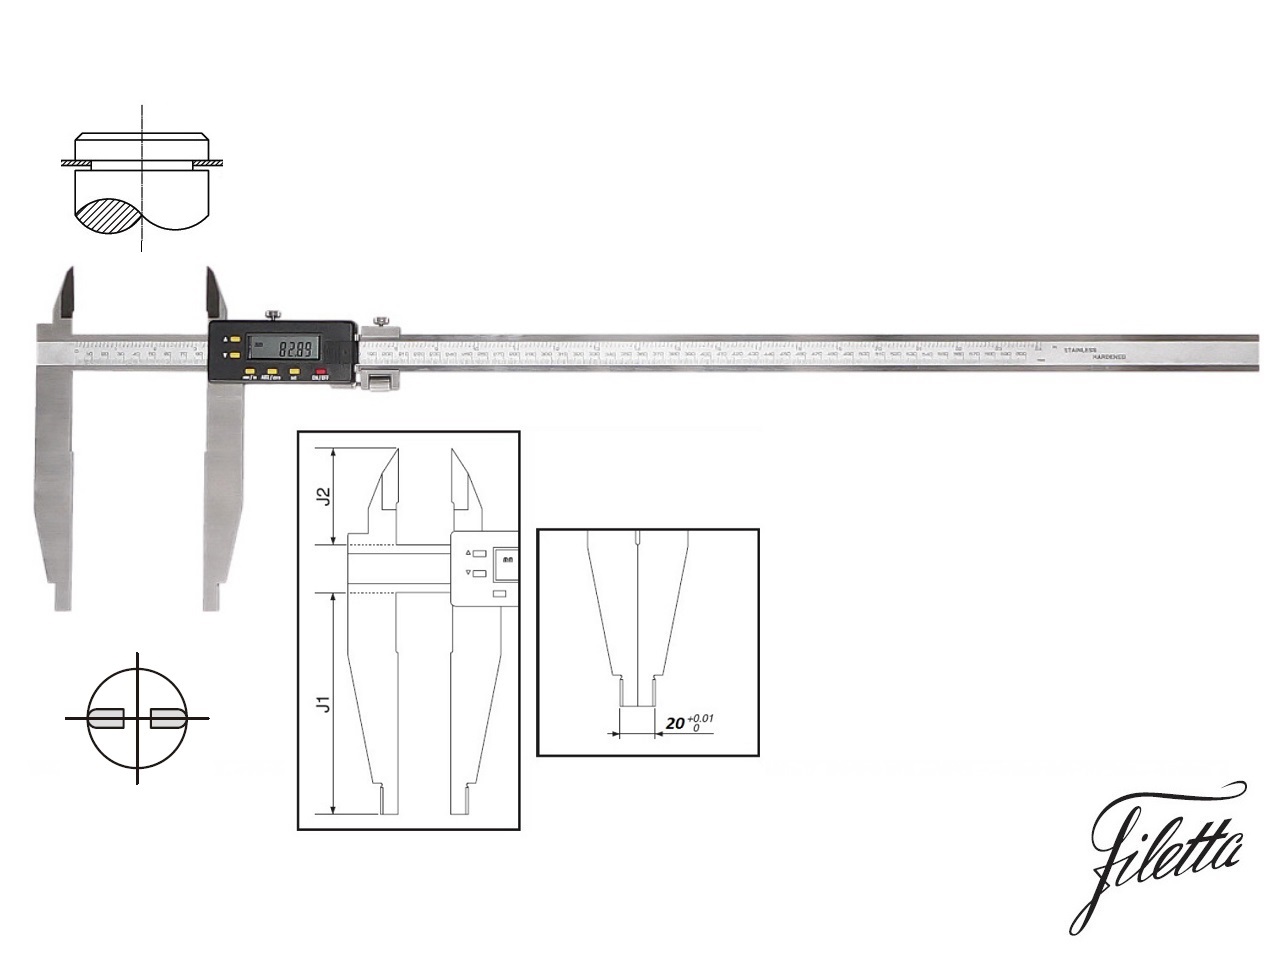 Digitální posuvné měřítko Filetta 0-1500/300 mm s měřicími nožíky pro vnější měření